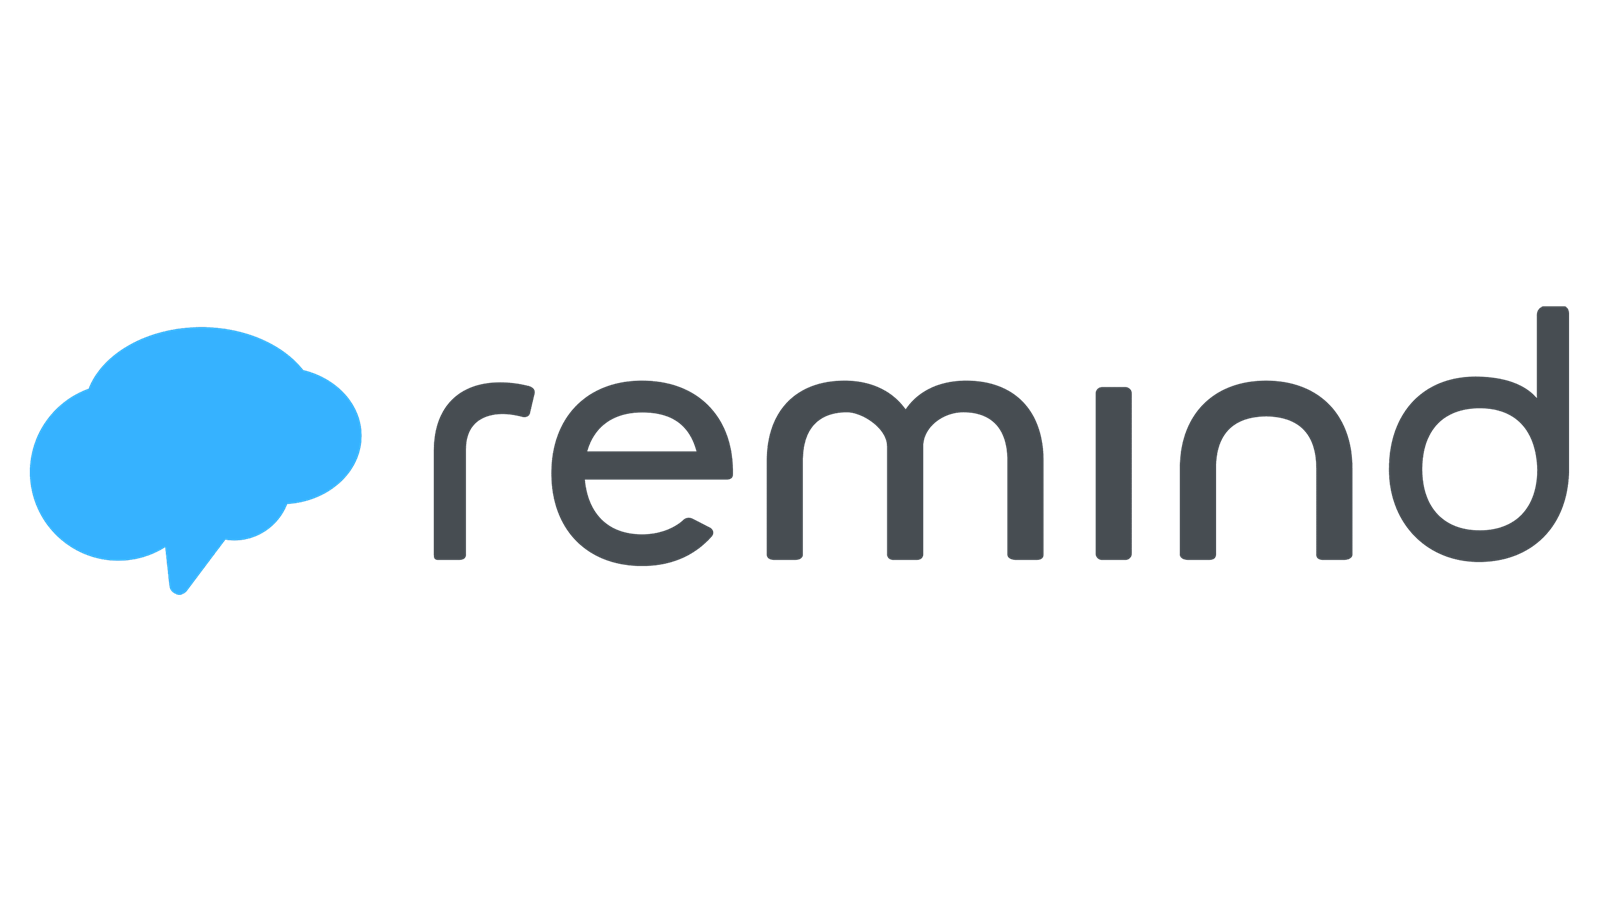  remind logo